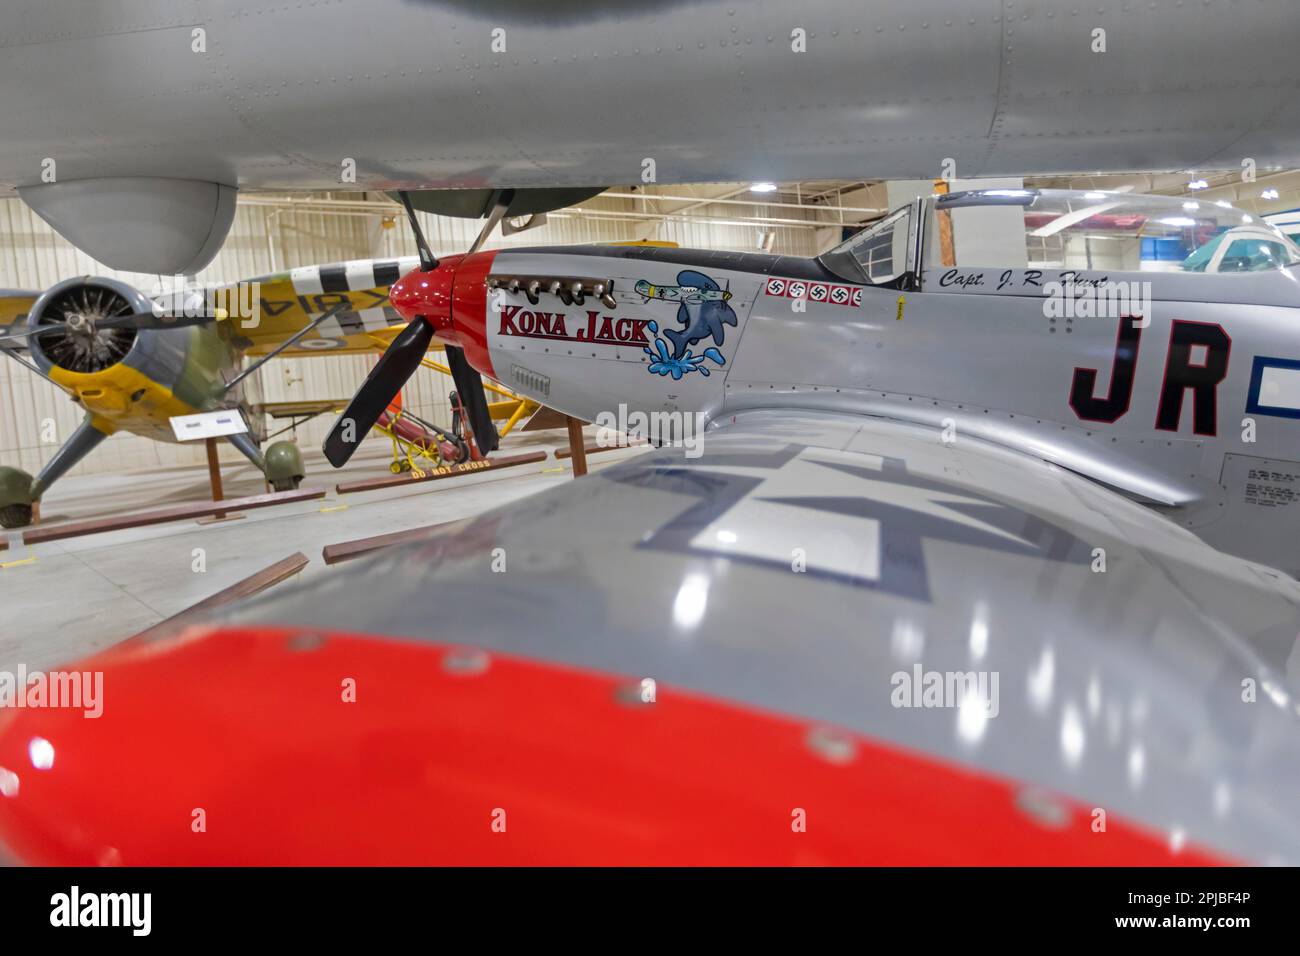 Liberal, Kansas, el Mid-America Air Museum. El museo exhibe más de 100 aviones. El Kona Jack es una réplica de tres cuartas partes de la Segunda Guerra Mundial Foto de stock